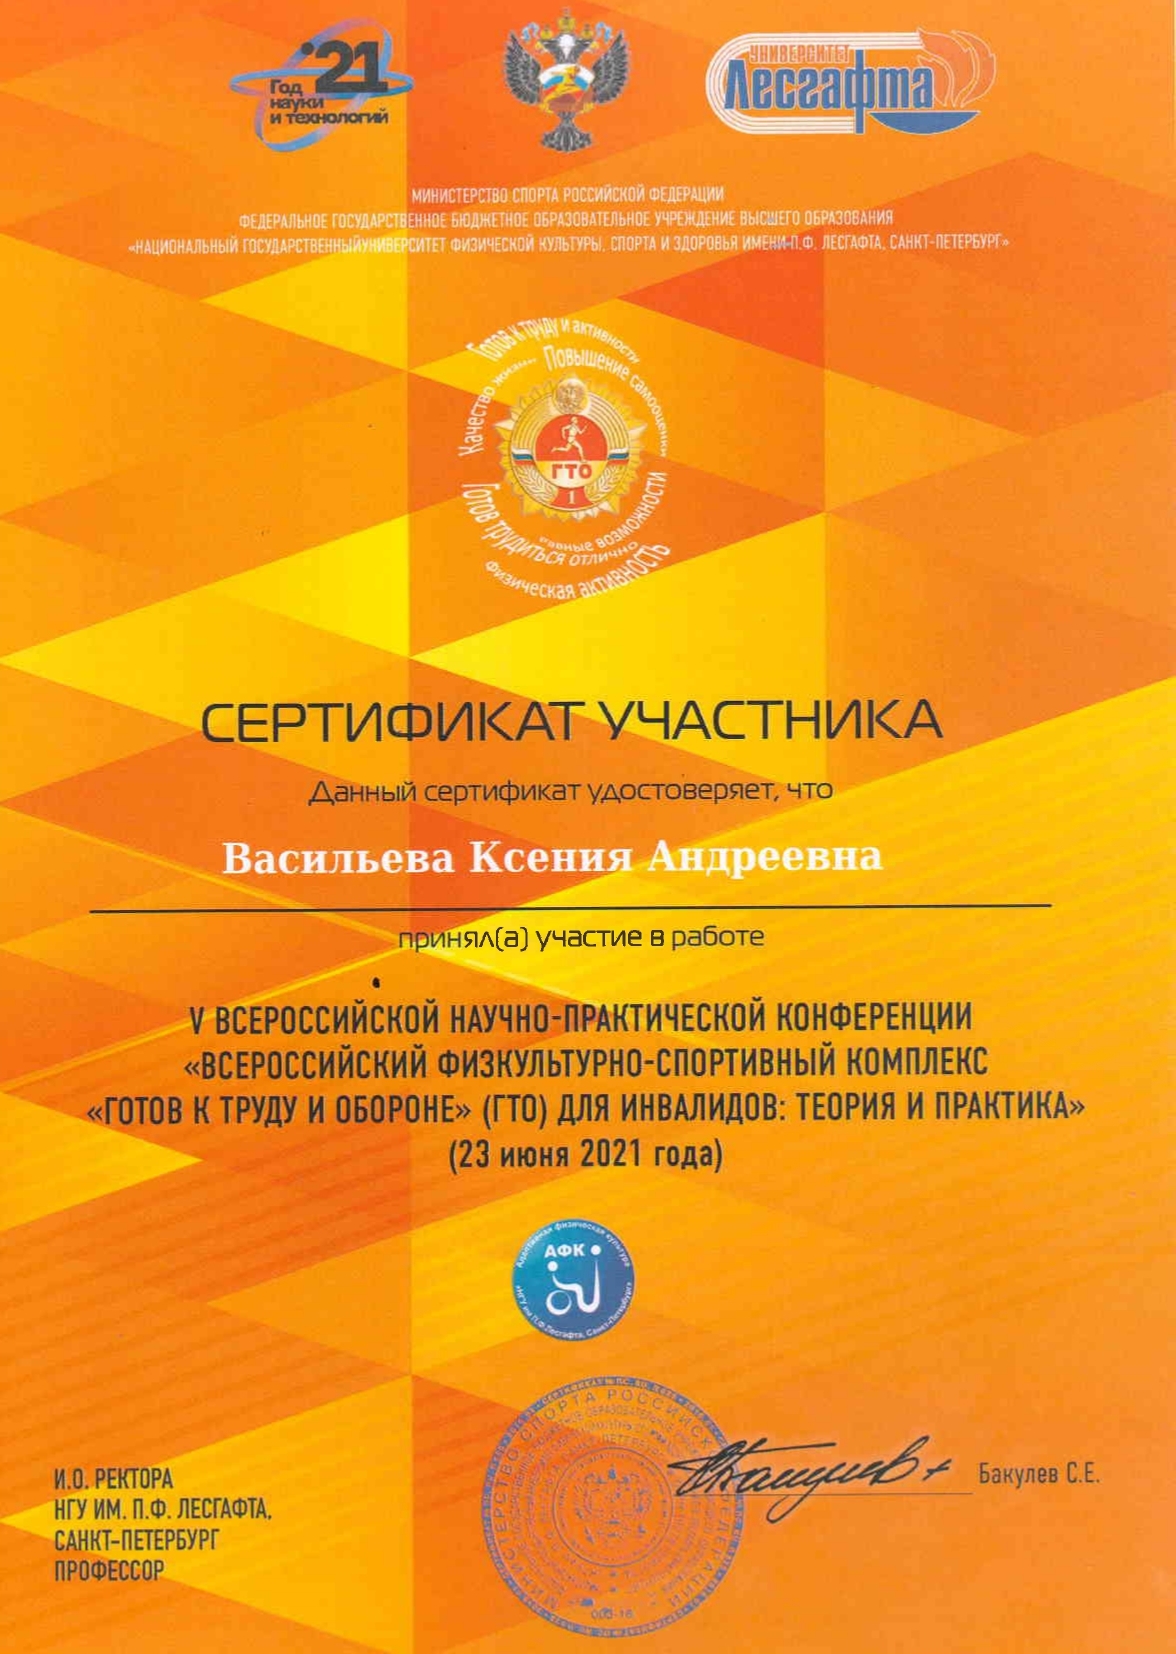 Сертификат научной конференции - Васильева Ксения Андреевна